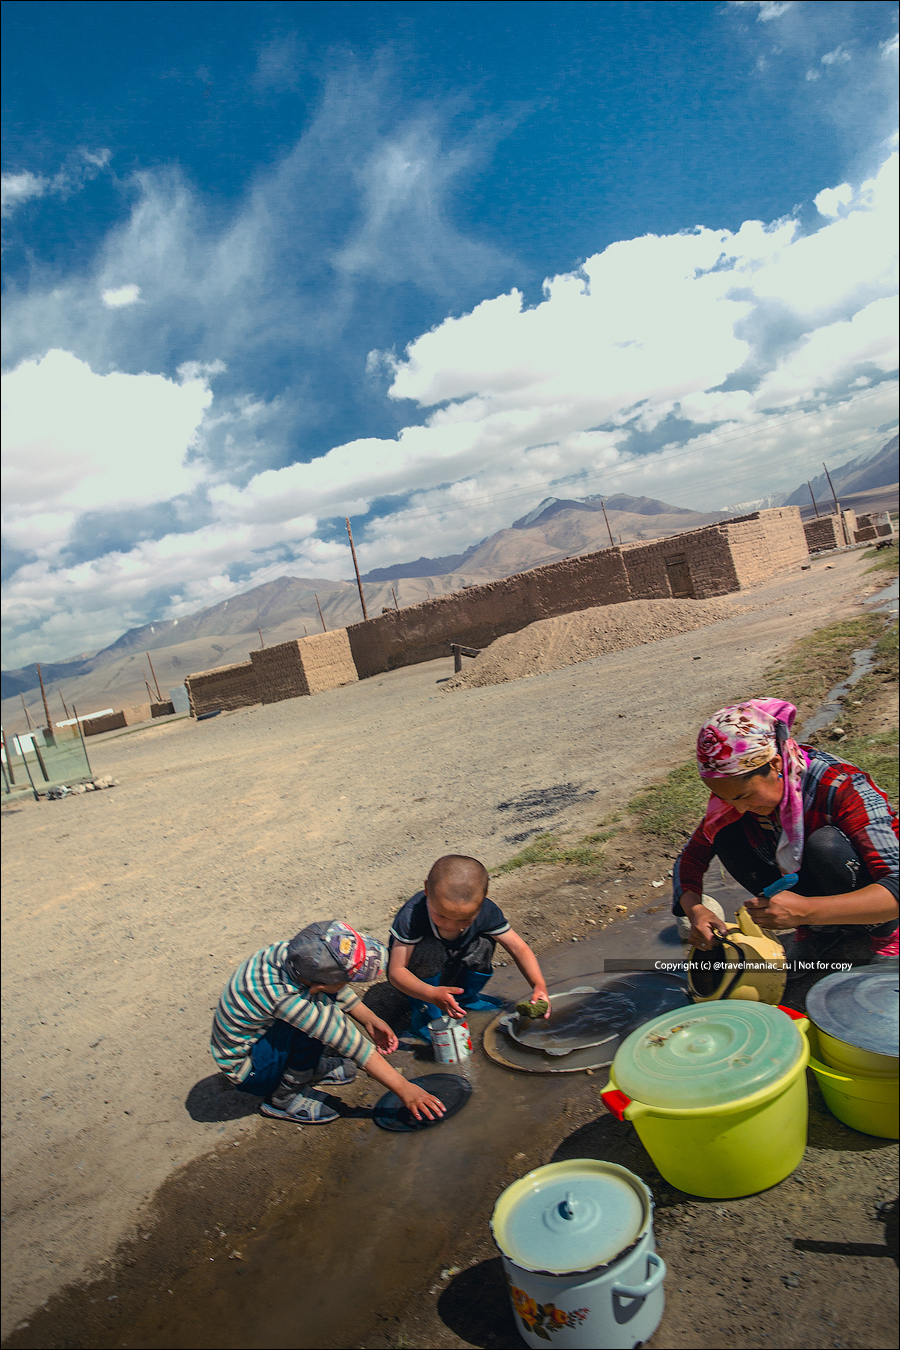 Суровые туалеты, мытье посуды в канаве и отопление навозом: как живется людям в таджикских кишлаках2